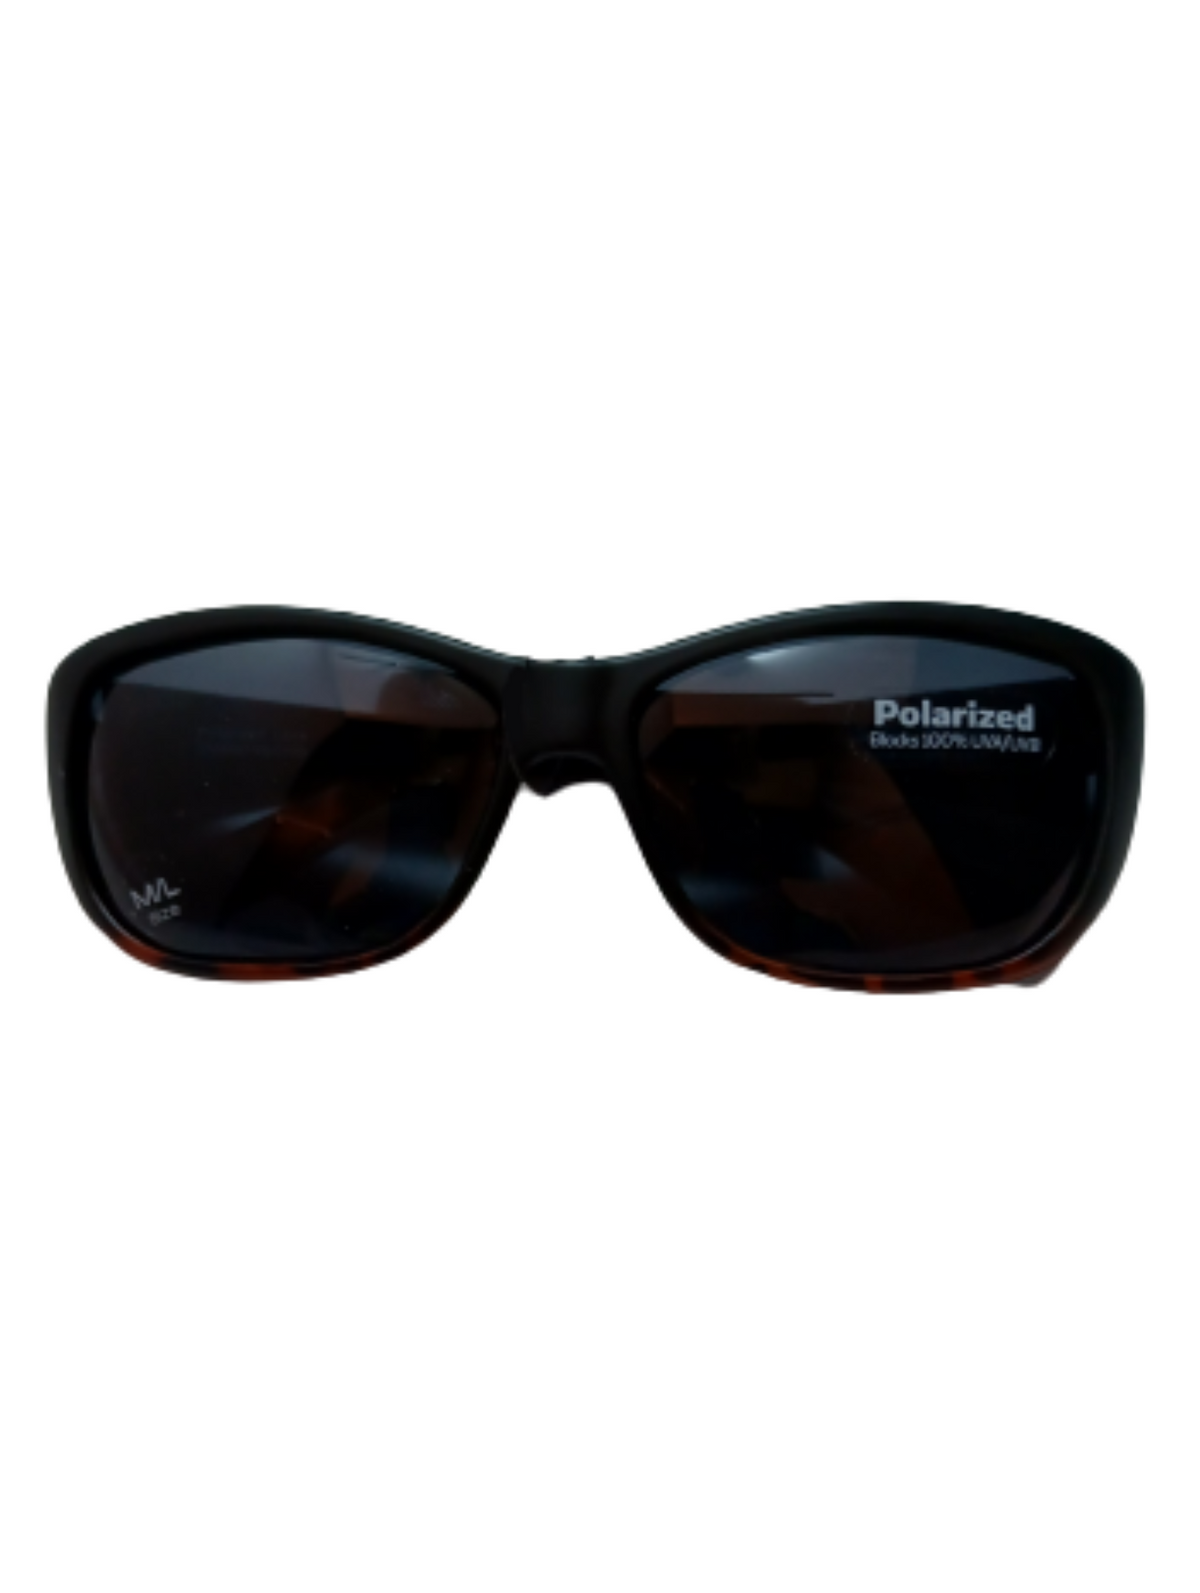 Solar Shield brown/black Sunglasses